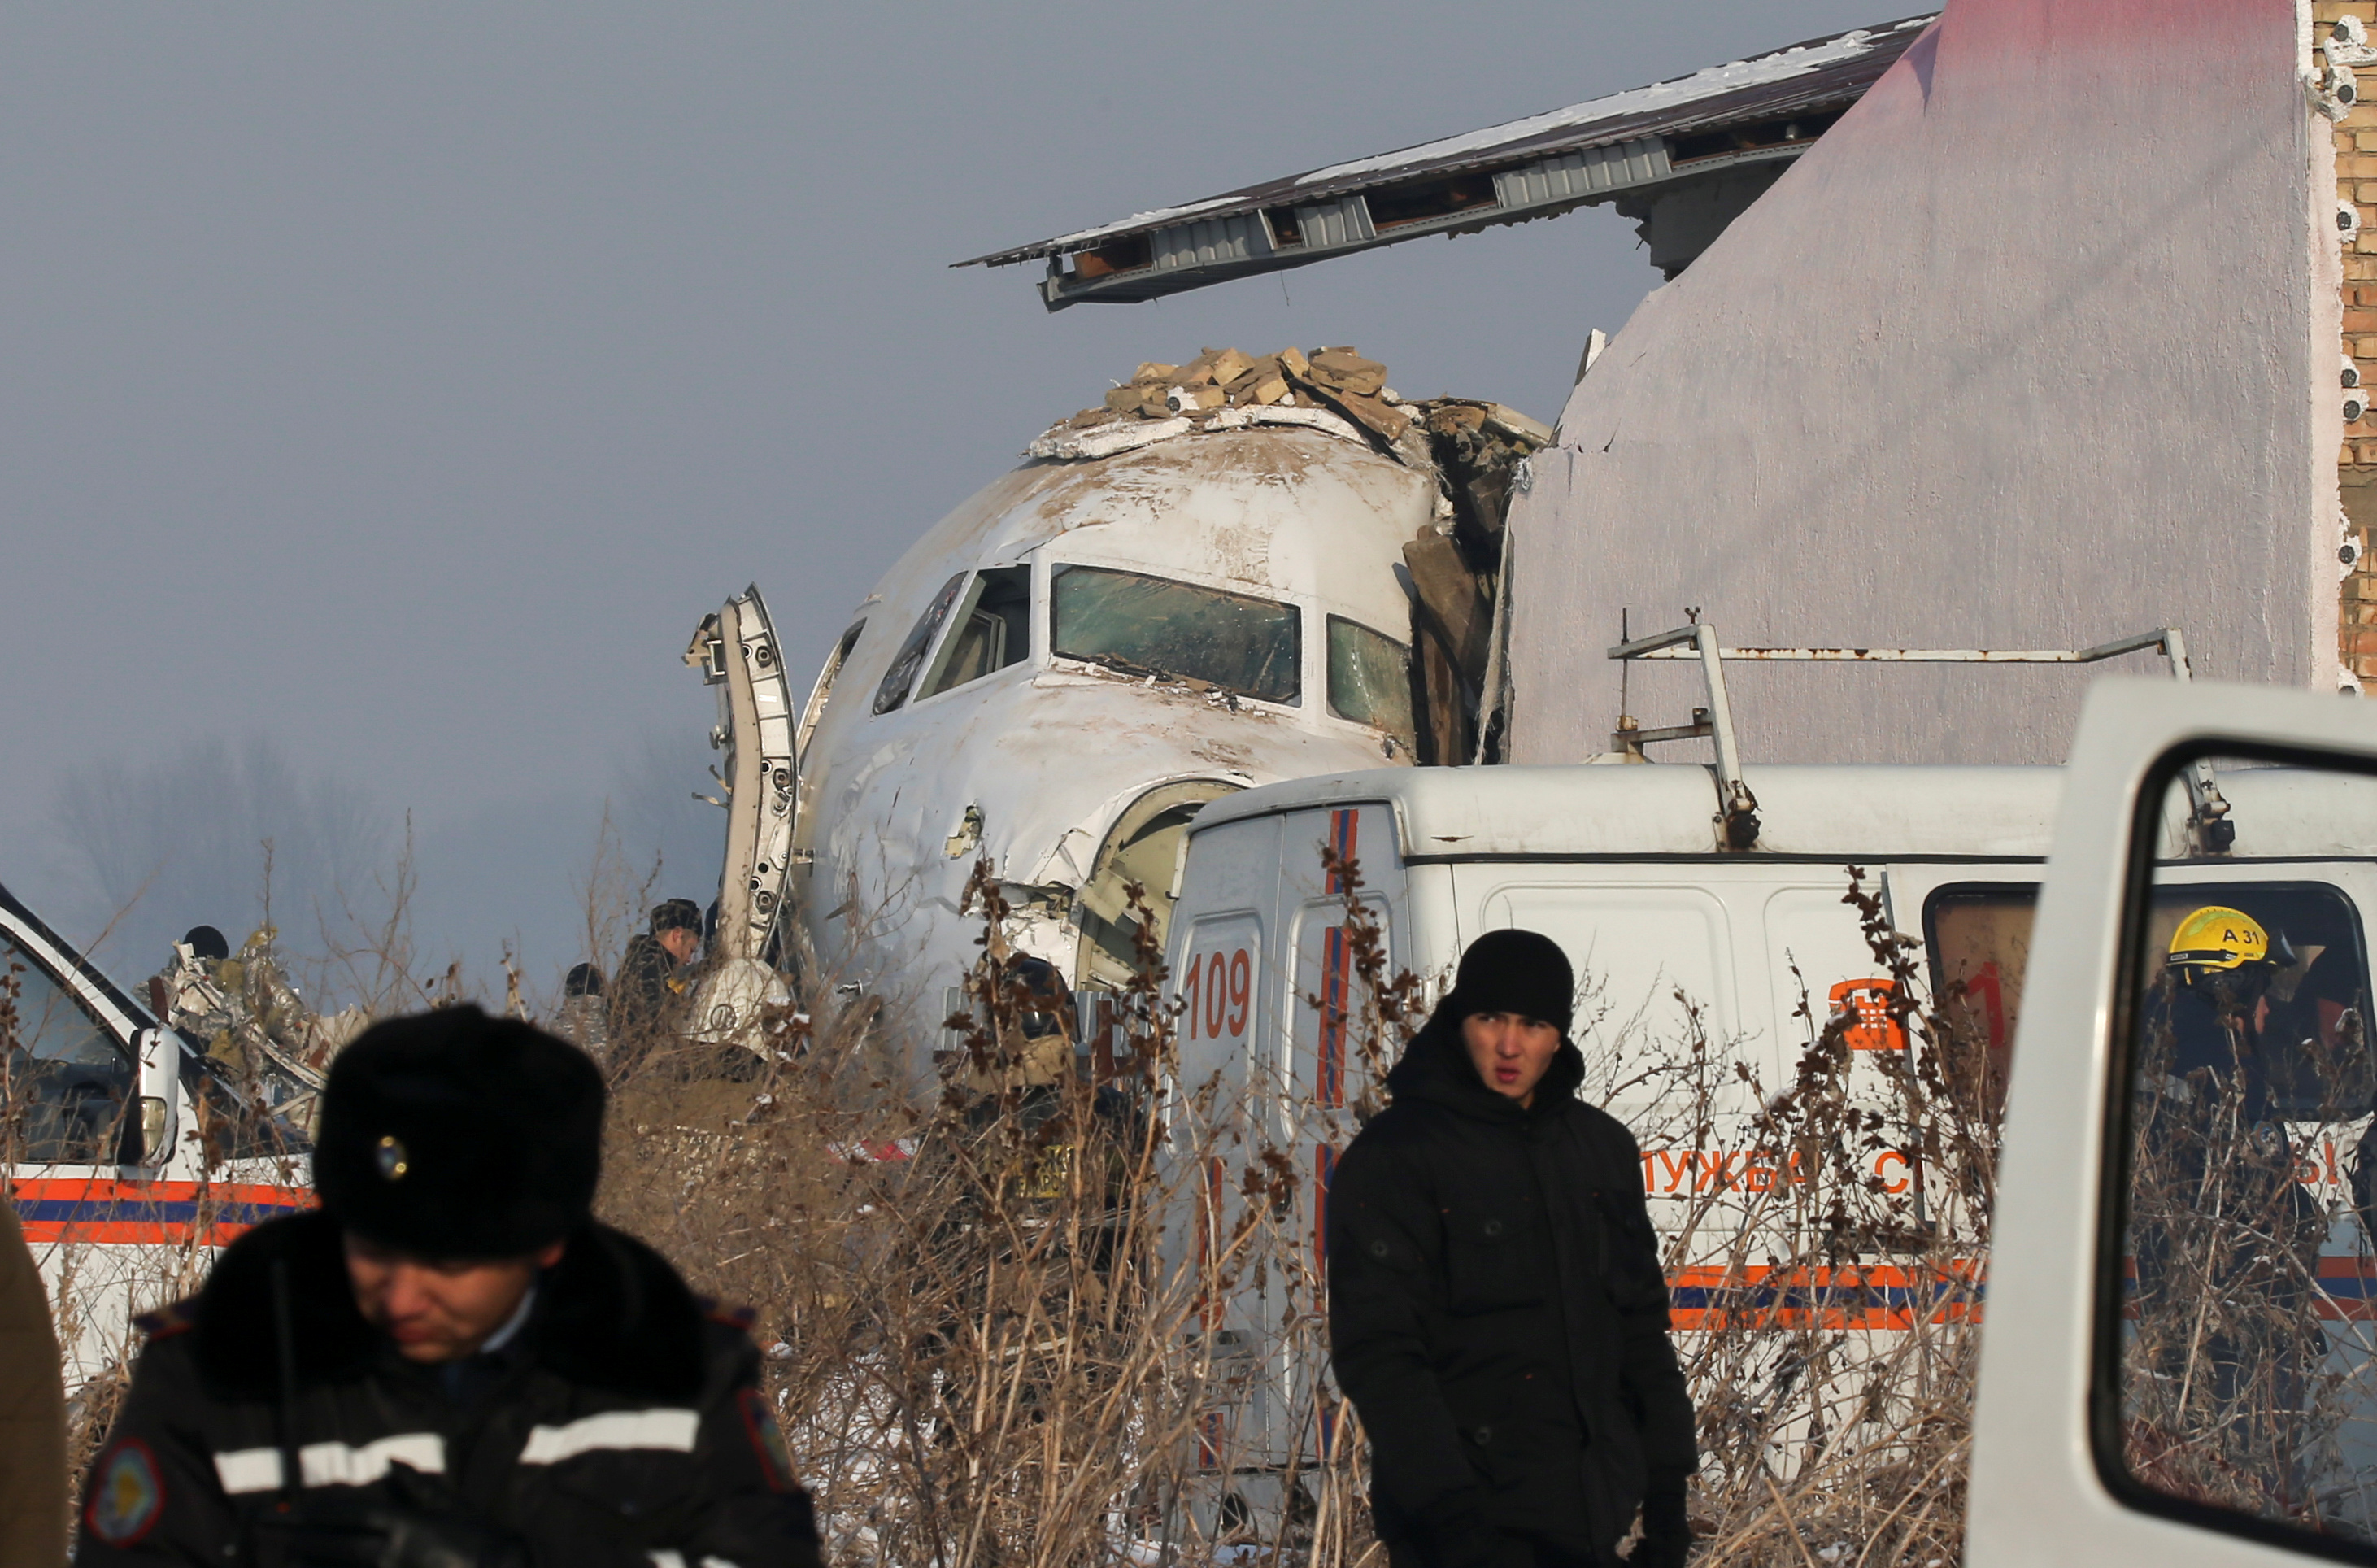 Какой самолет упал сегодня. Катастрофа ту-154 в Алма-Ате. Авиакатастрофа в Алма Ате 2019. Катастрофа Fokker 100 под Алма-атой. Fokker 100 bek Air катастрофа.